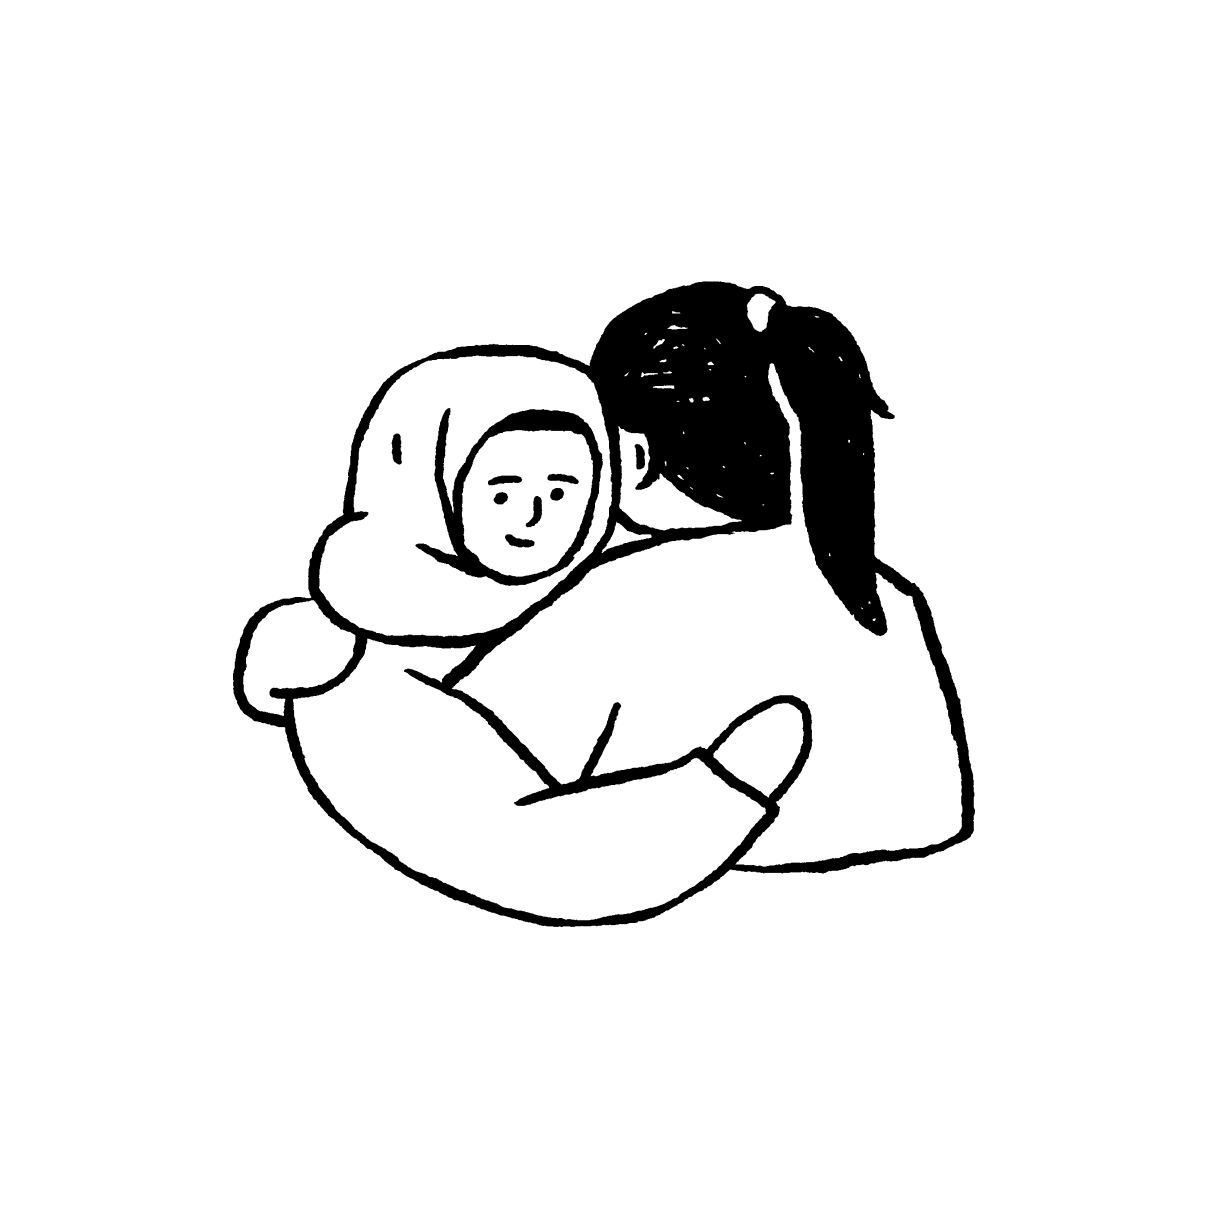 icon duas pessoas a abraçar-se que representa o acolhimento e a integração comunitária amal